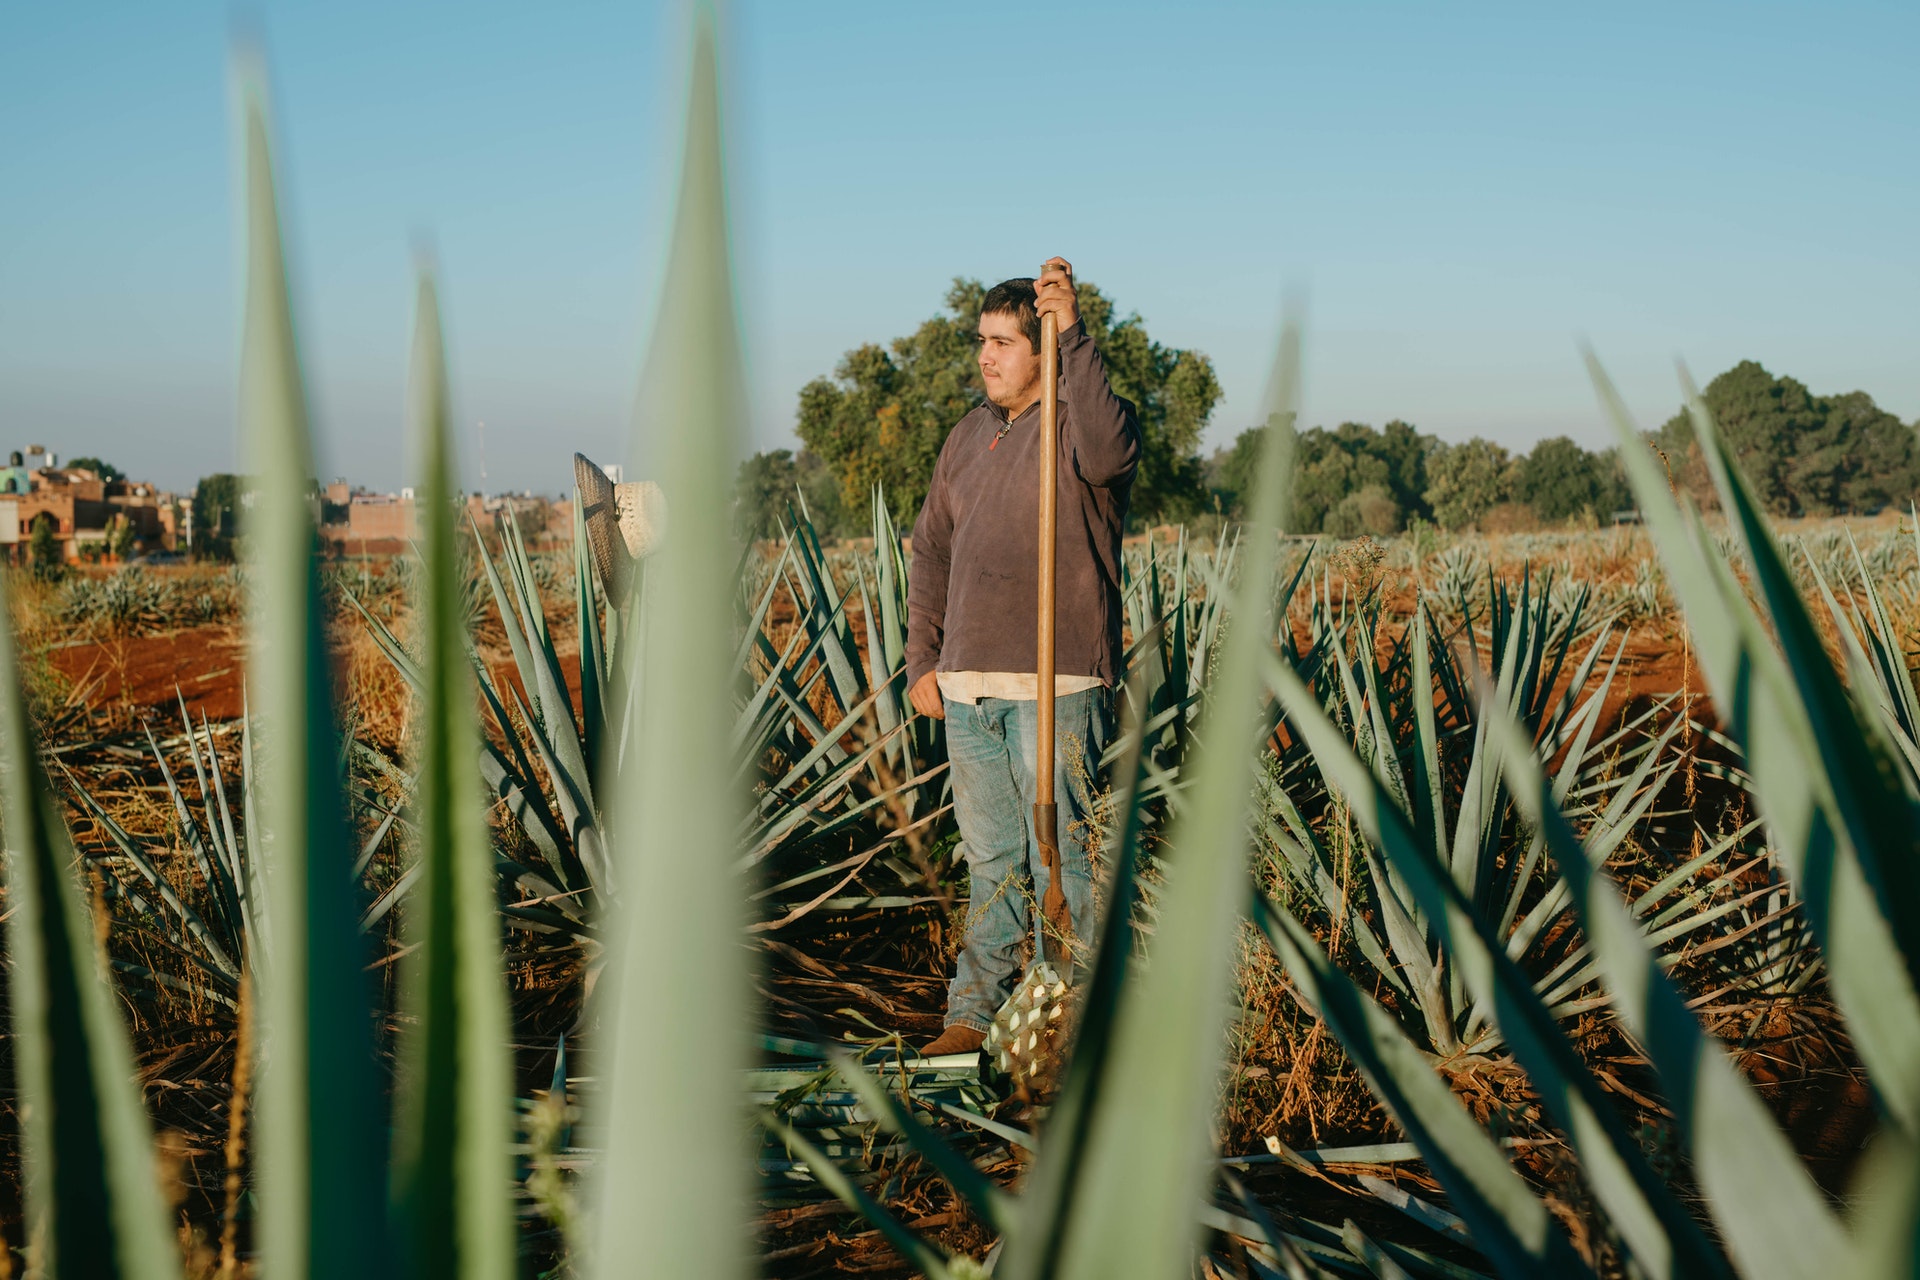 Man harvesting agave; photo by Los Muertos Crew on Pexels